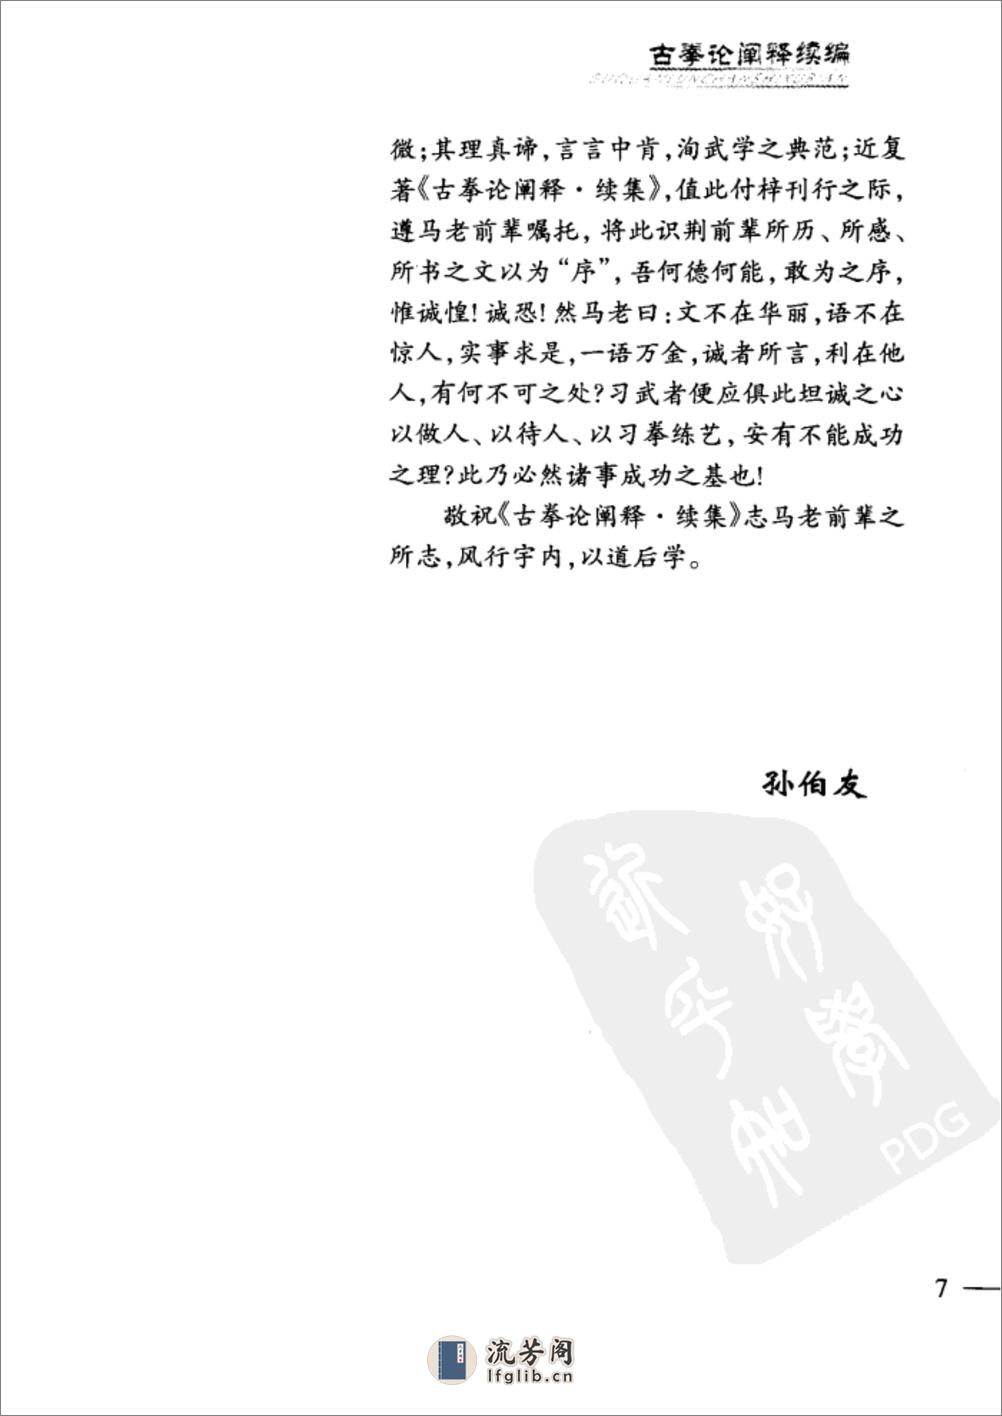 《古拳论阐释续编》马国兴 - 第16页预览图